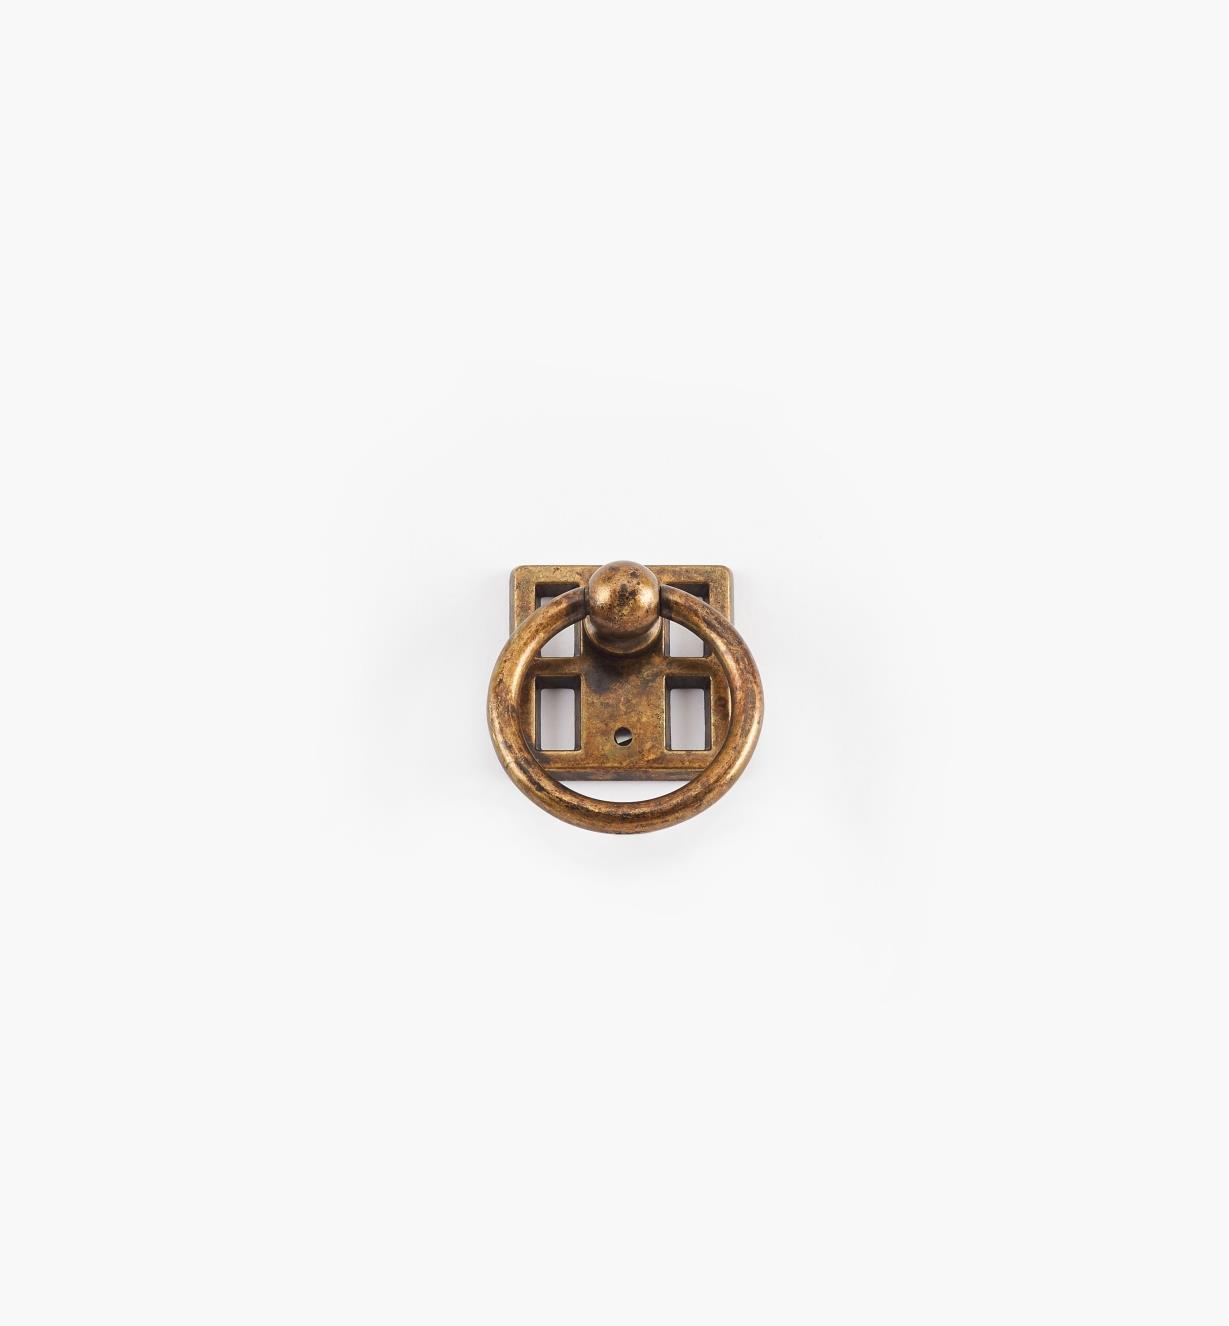 01A2841 - Poignée à anneau sur rosace de 1 1/8 po, série Arts and Crafts, fini laiton ancien